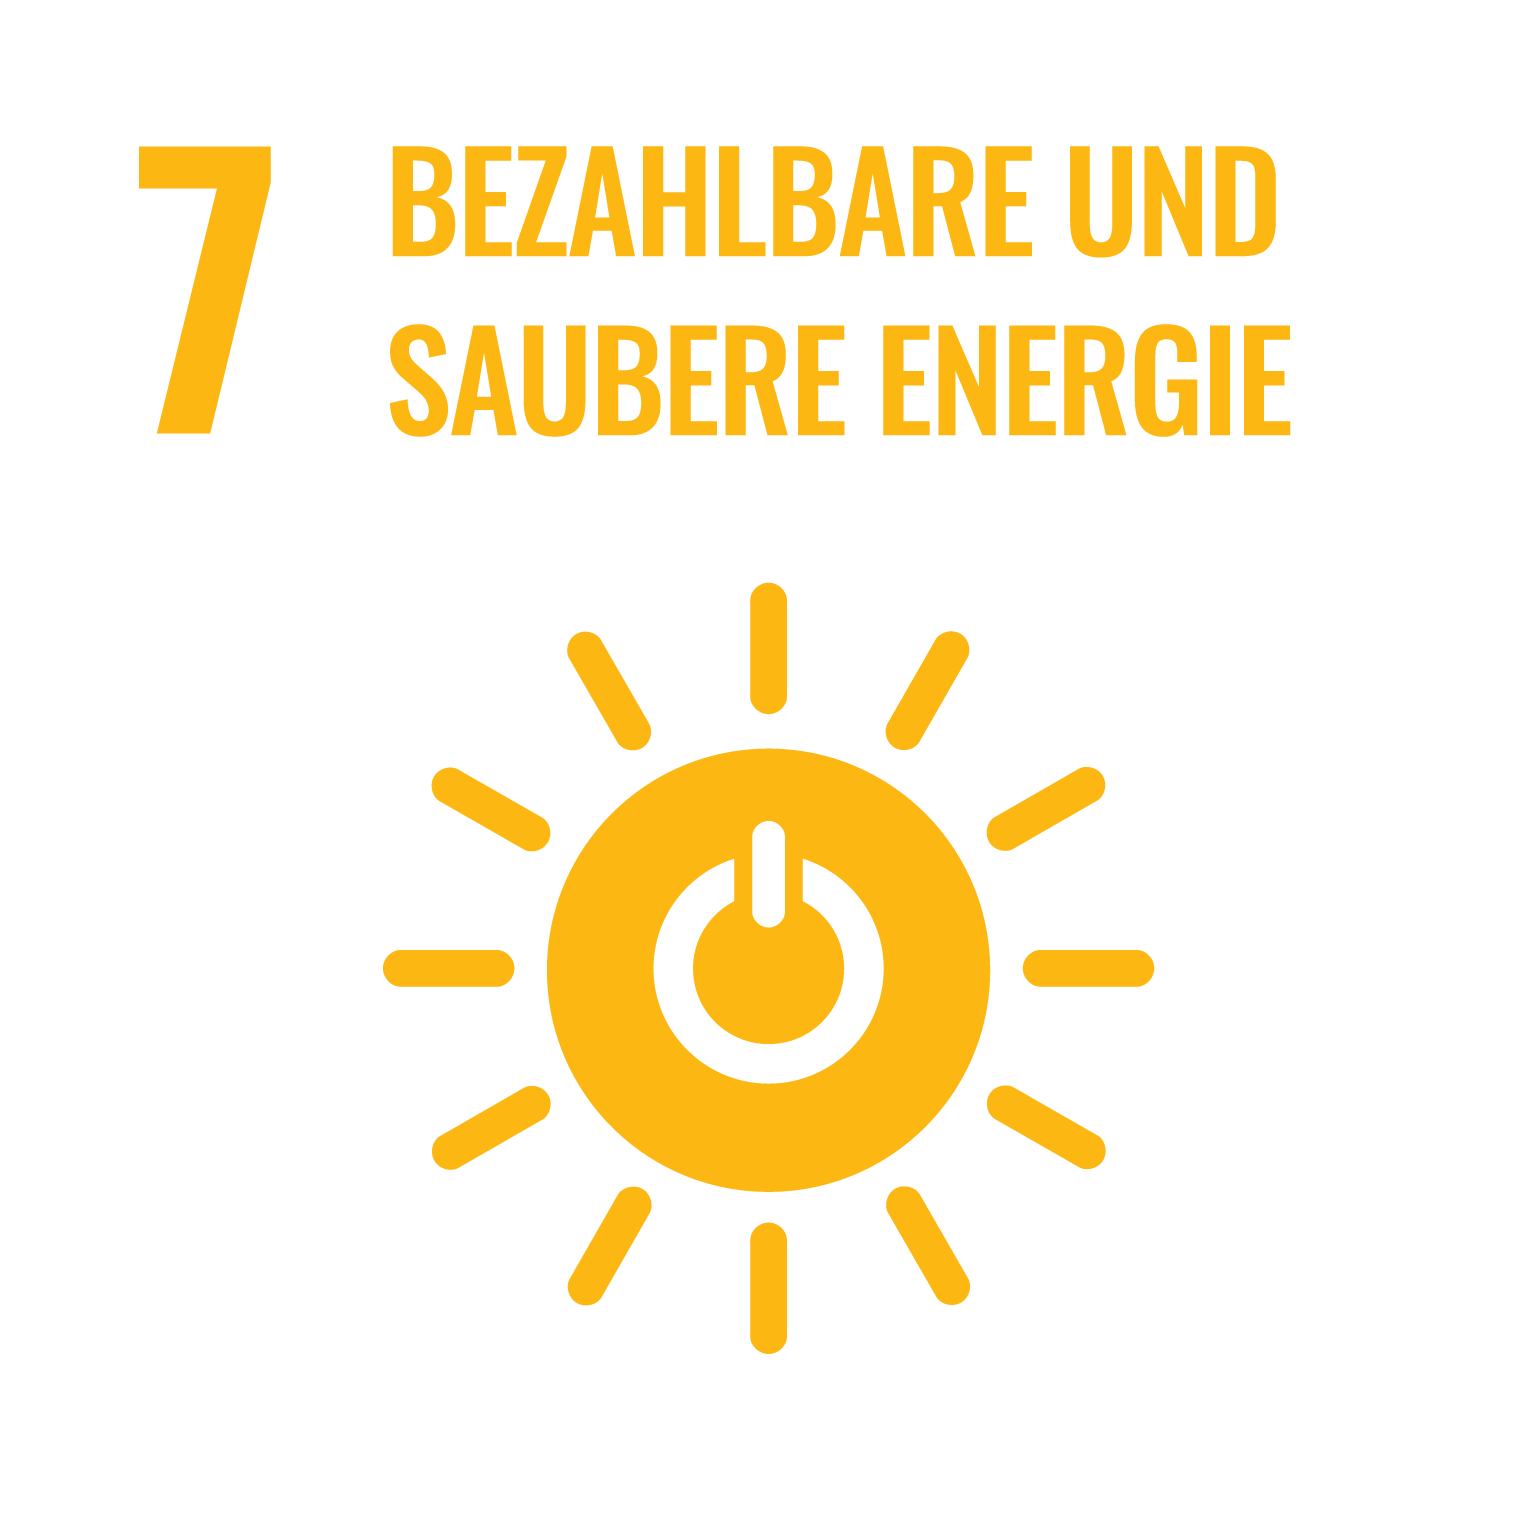 Ziel 7 Bezahlbare und saubere Energie